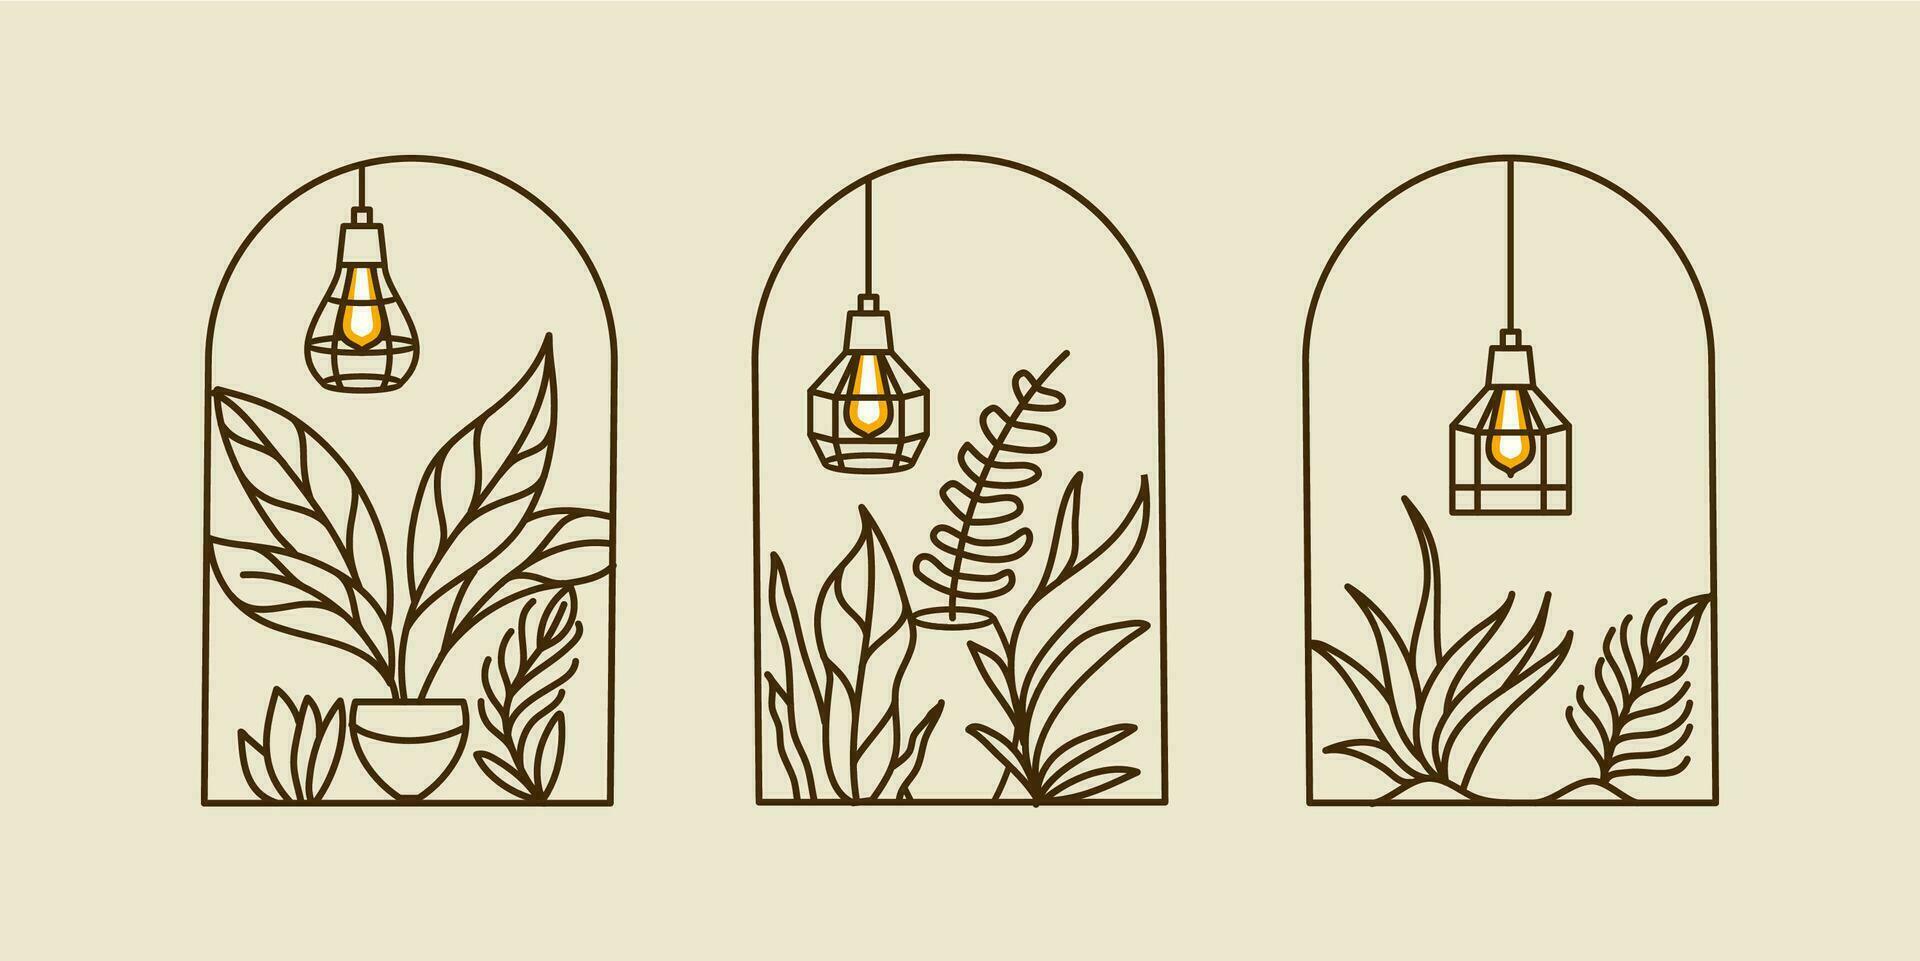 boho logos con tropical planta hojas en florero con colgante ligero lámpara en moderno minimalista línea estilo. vector bohemio etiquetas para creando tarjeta postal, carteles, invitación, social medios de comunicación publicaciones